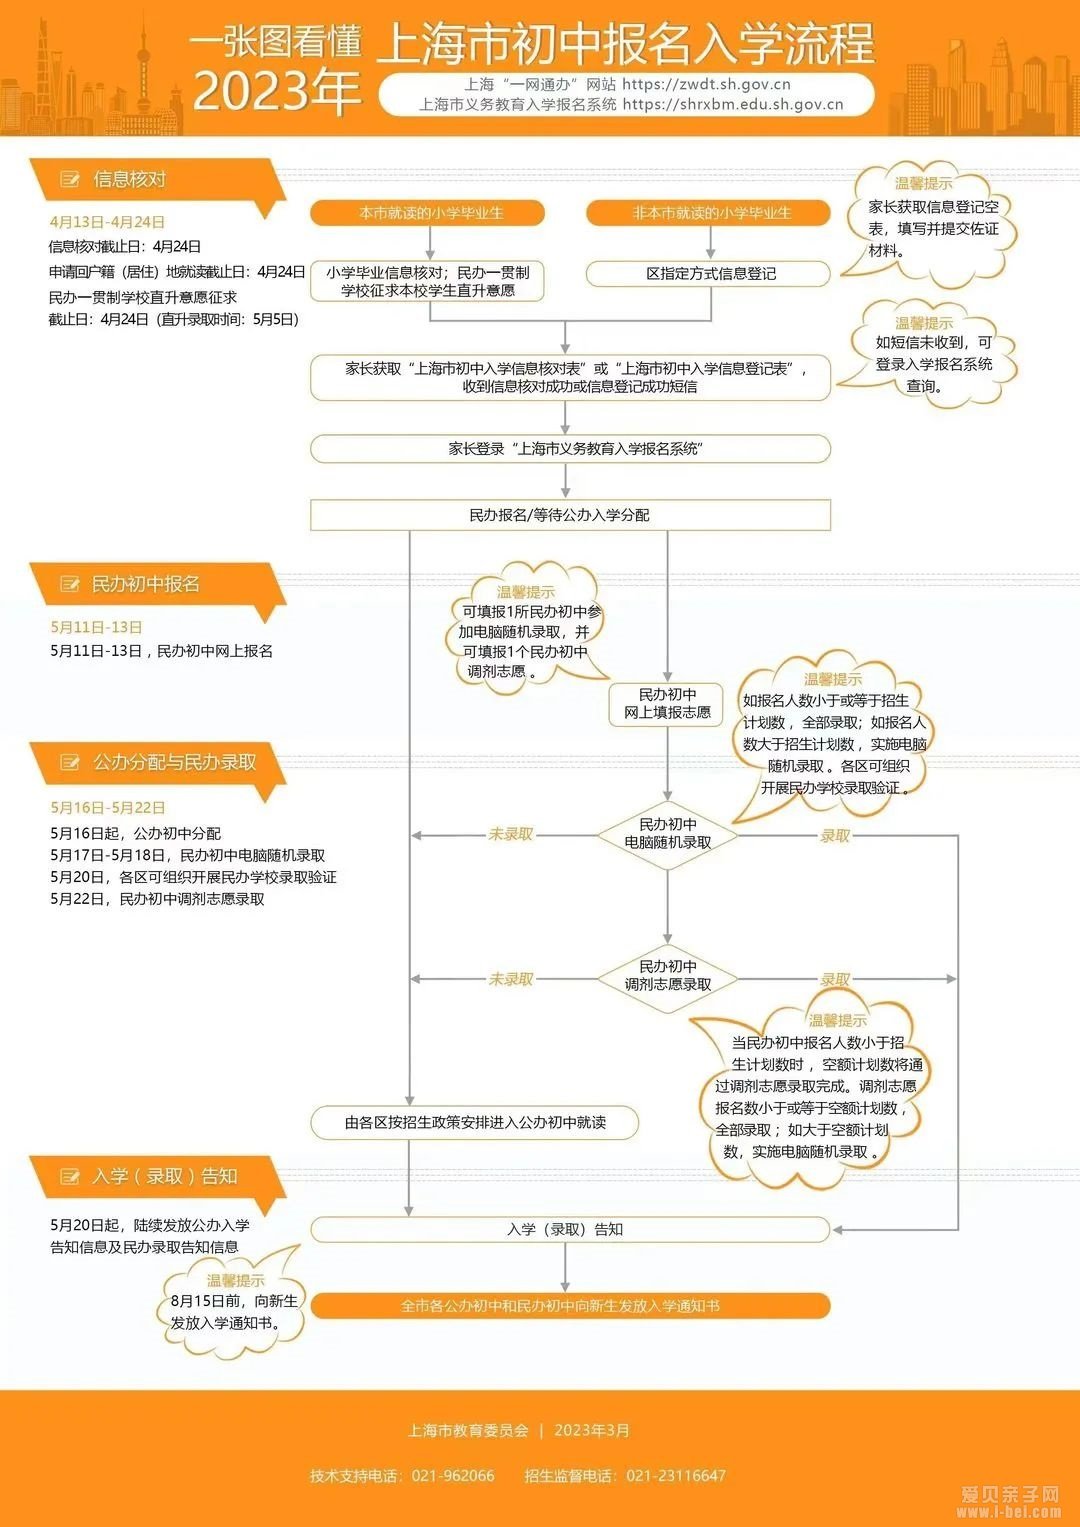 一图看懂2023年上海市小学初中报名入学流程